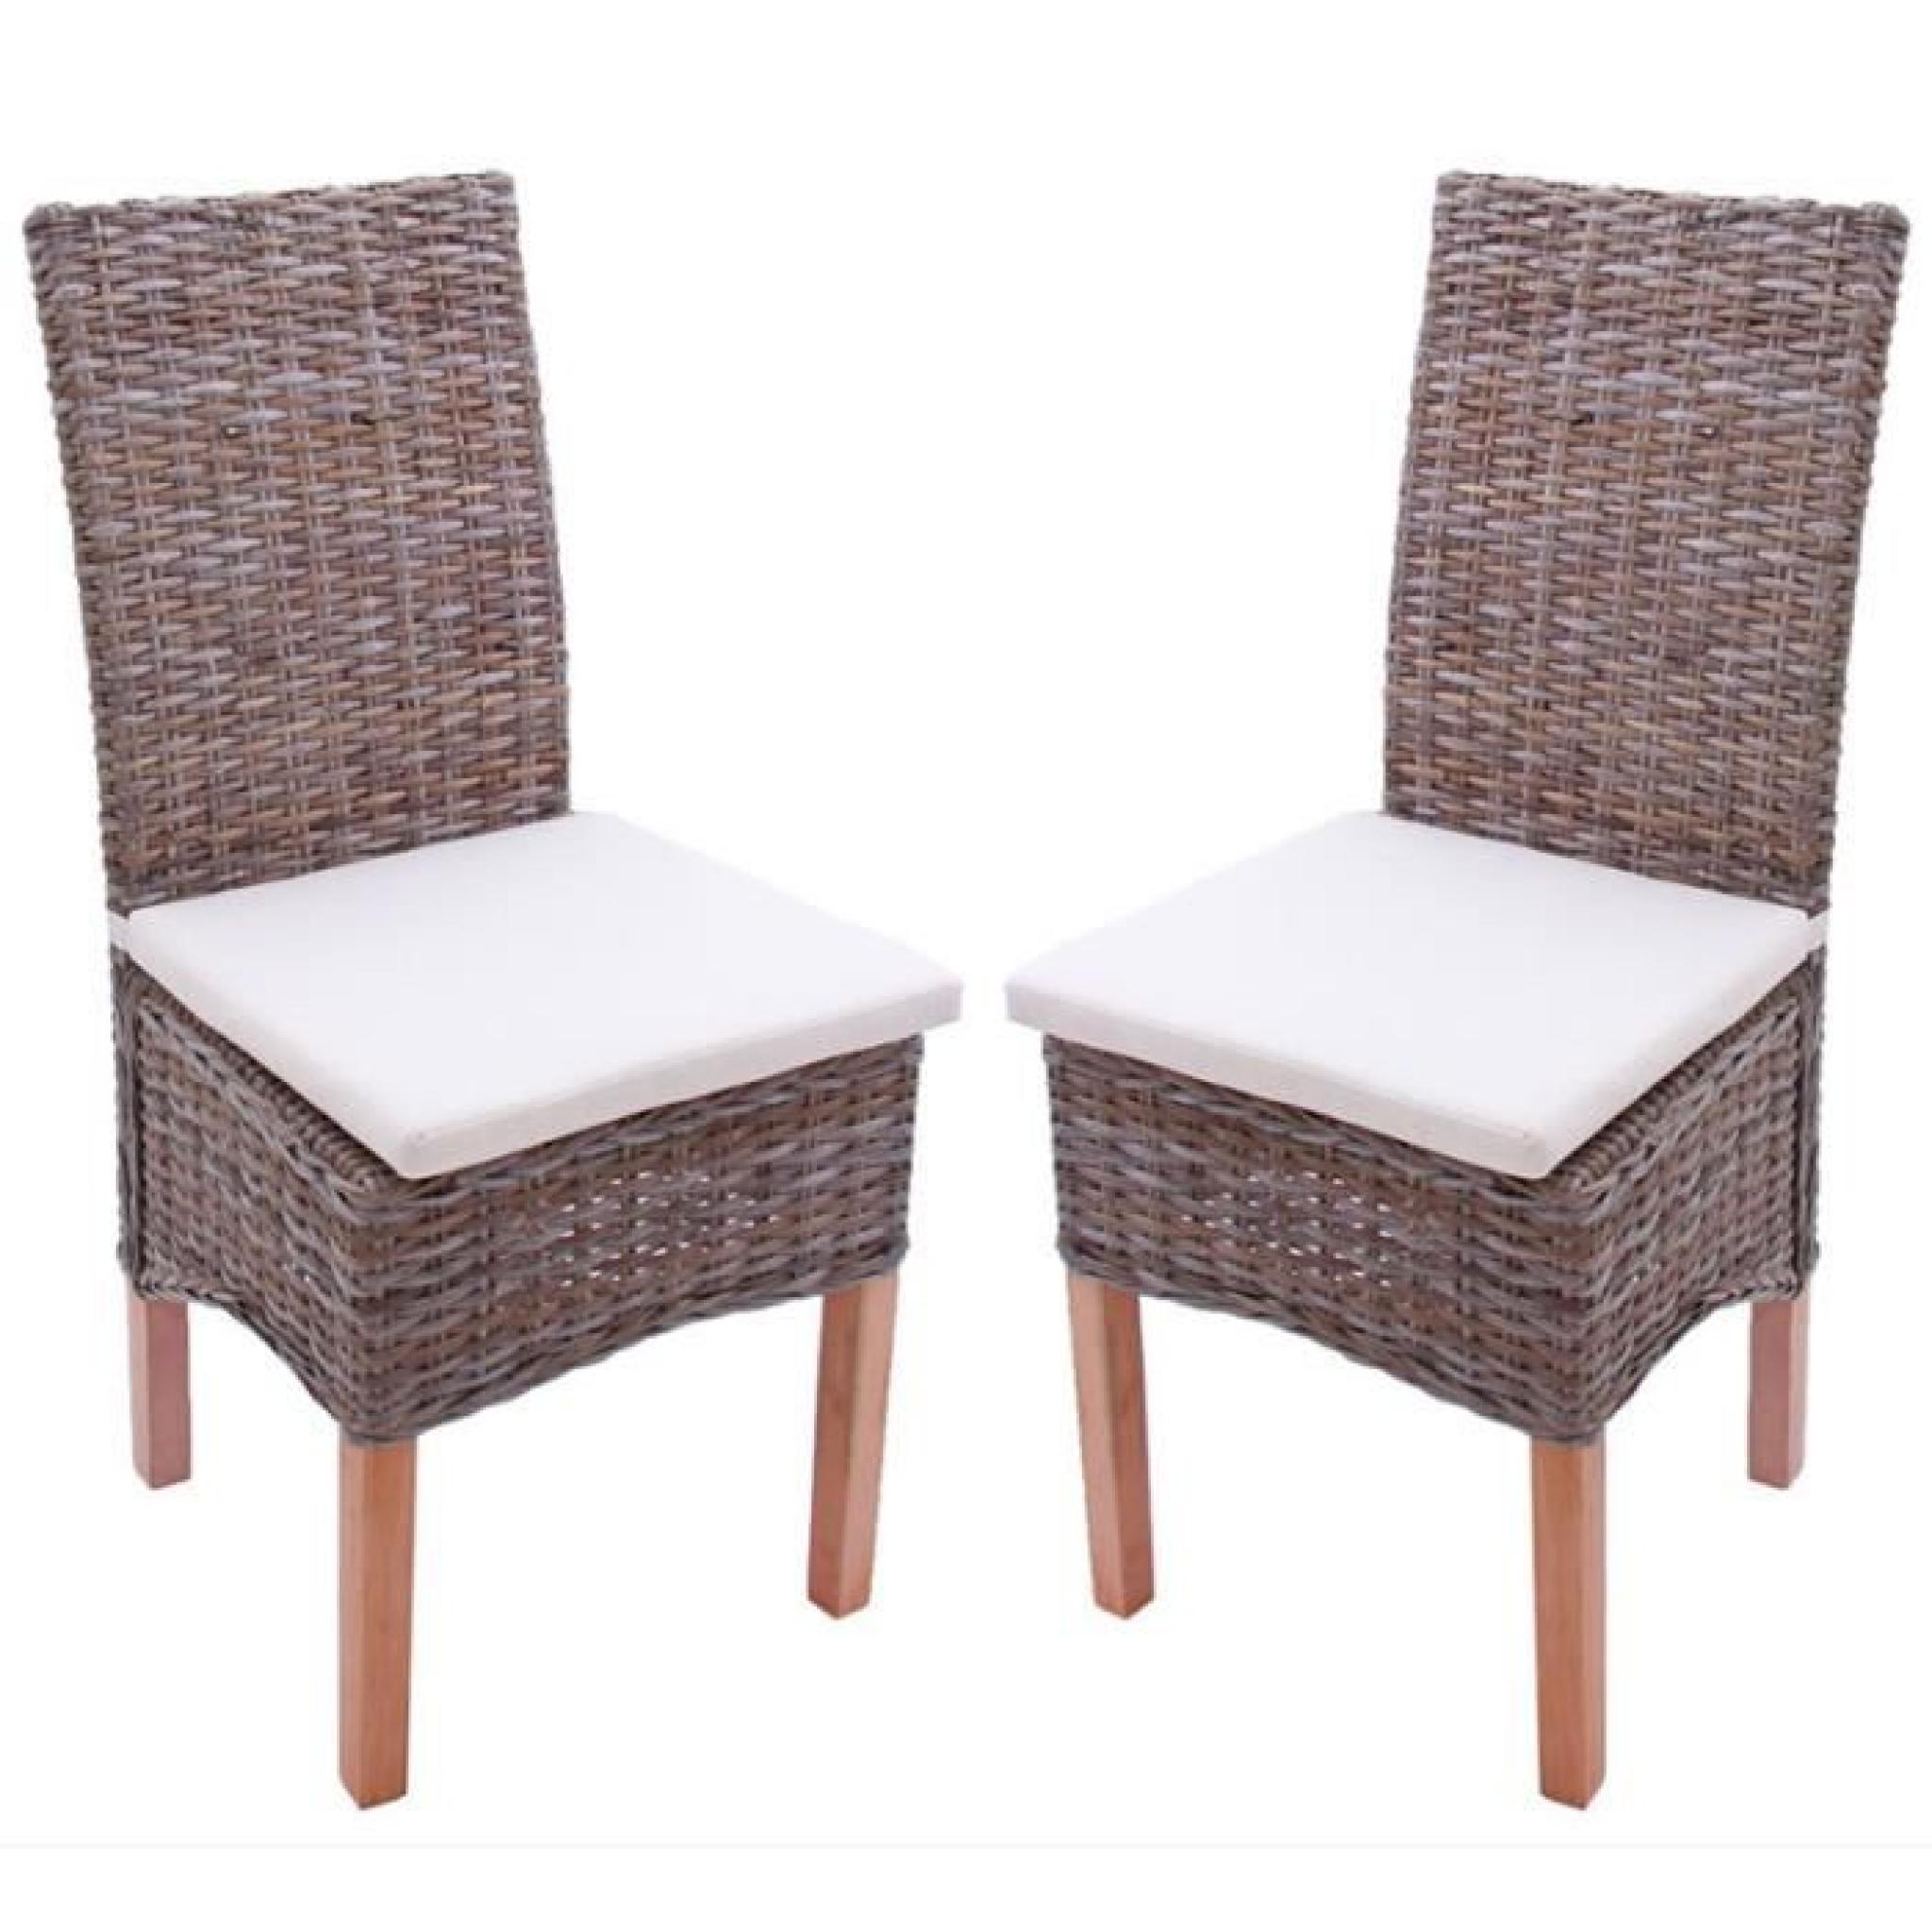 Lot de 2 chaises M44 salle à manger, rotin kubu/bois,47x52x97cm, avec coussins.